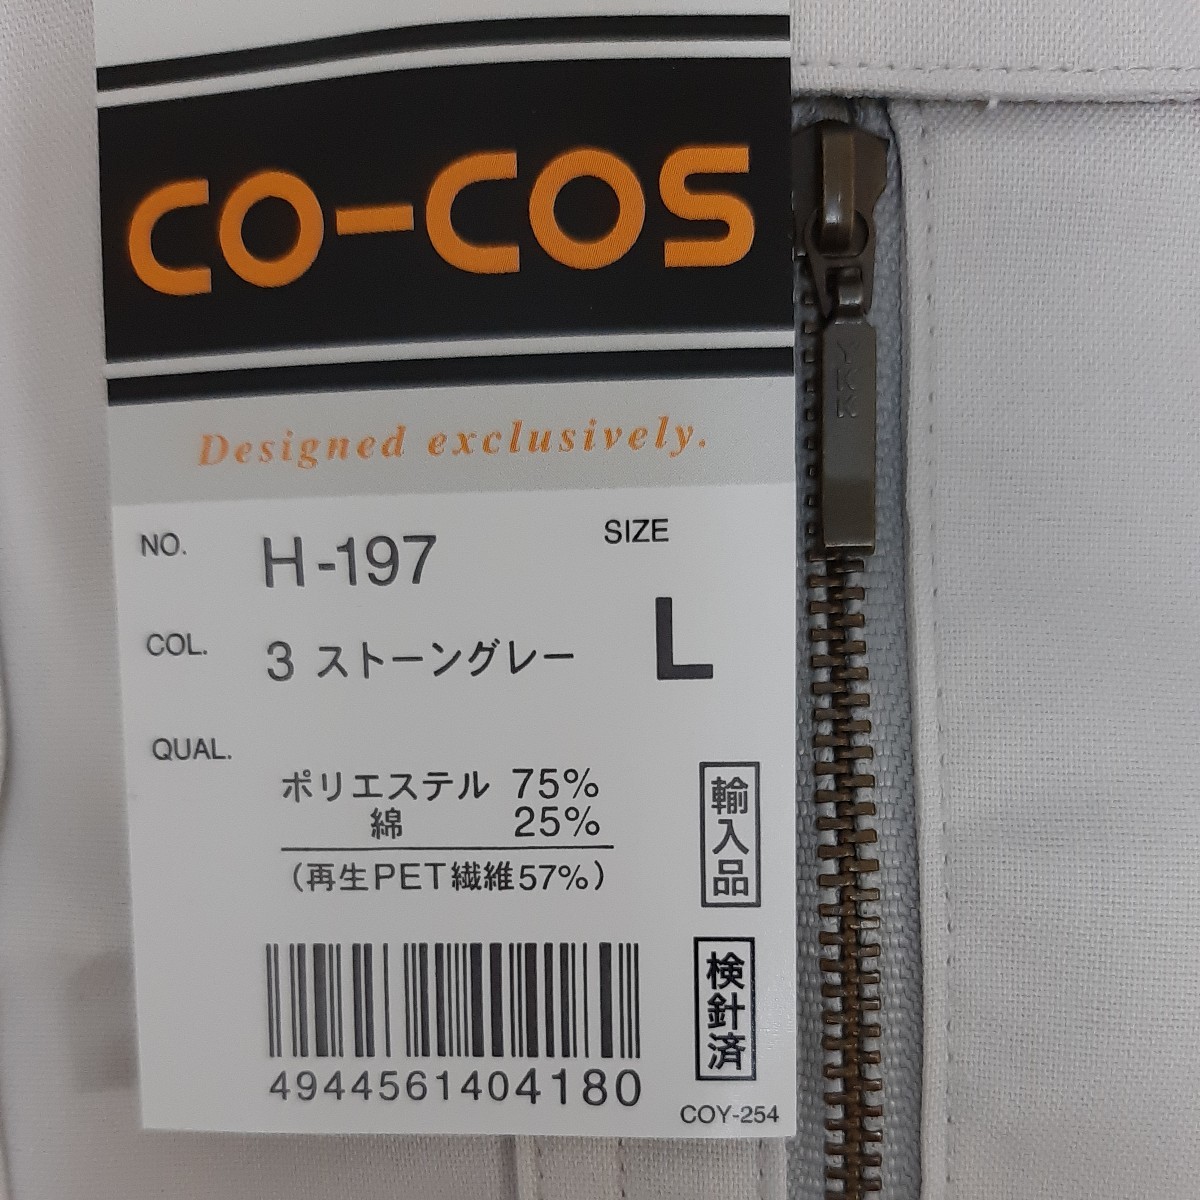 熱販売 コーコス信岡 CO-COS ブルゾンH-1190 ブルー 4L H-1190-6-4L 1枚 